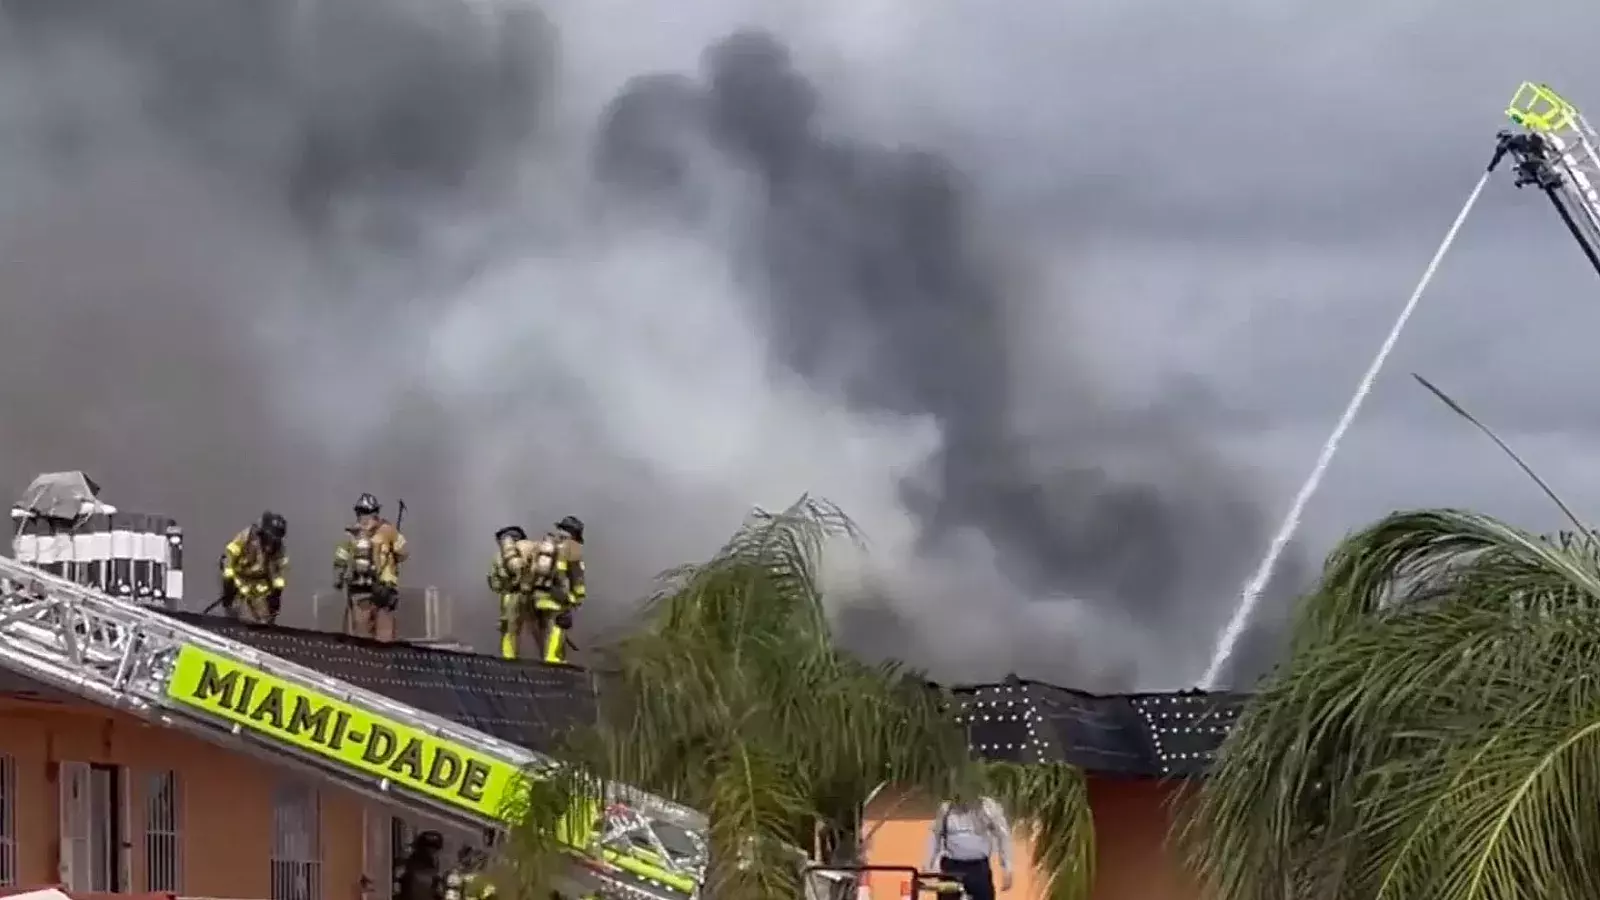 Incendio en complejo de apartamentos en Miami Dade provoca colapso del techo